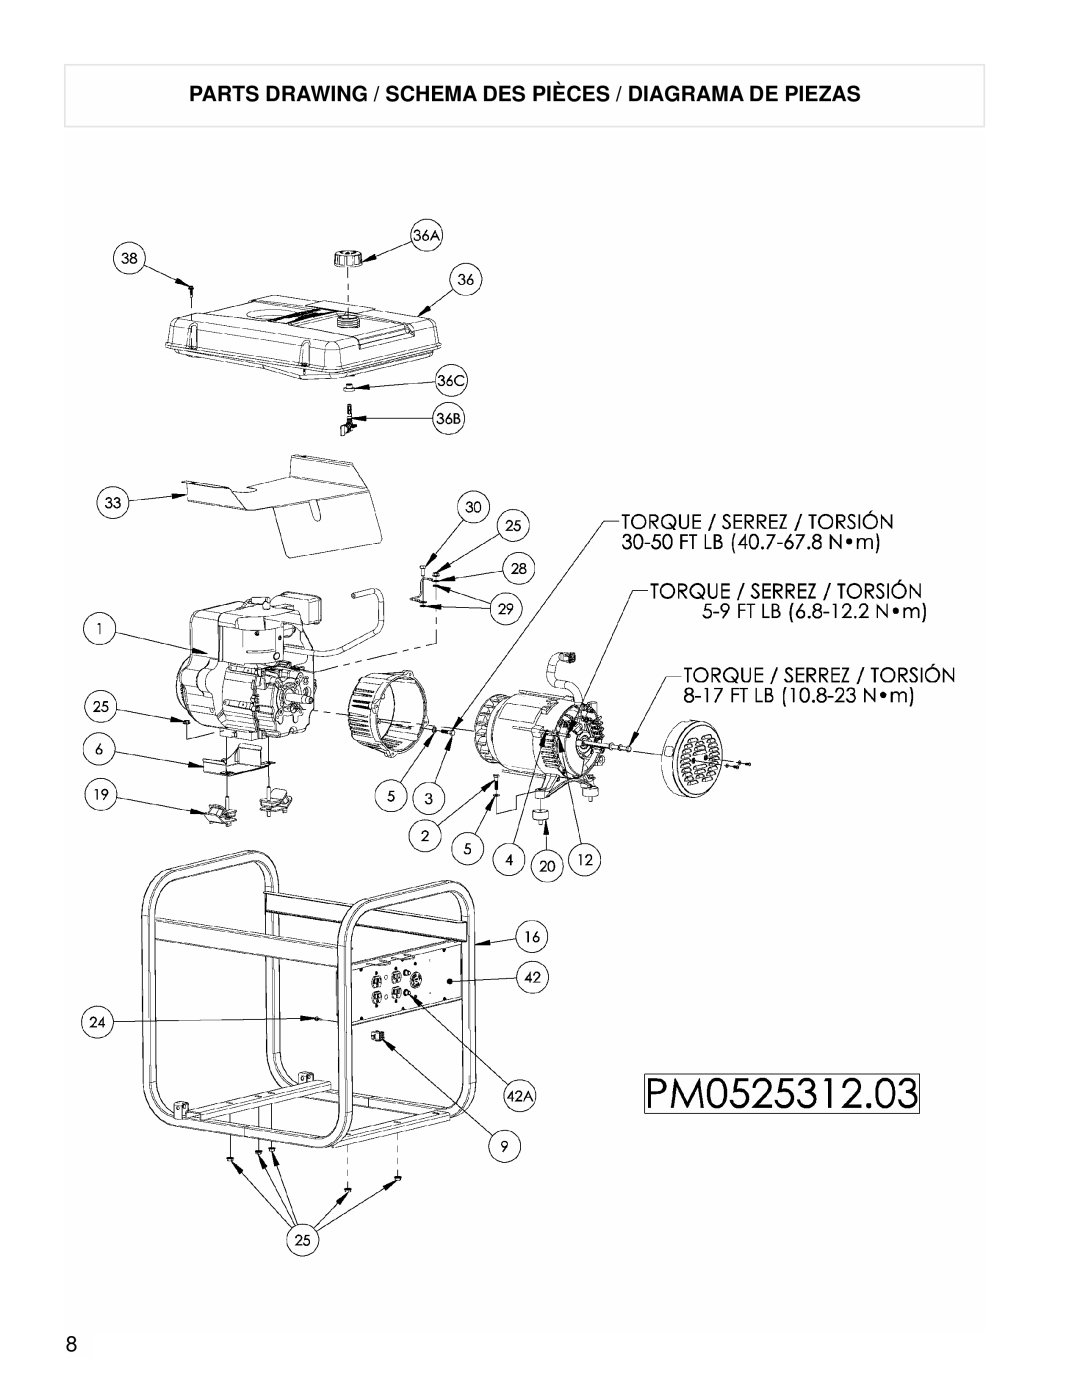 Powermate PM0525312.03 manual Parts Drawing / Schema DES Pièces / Diagrama DE Piezas 